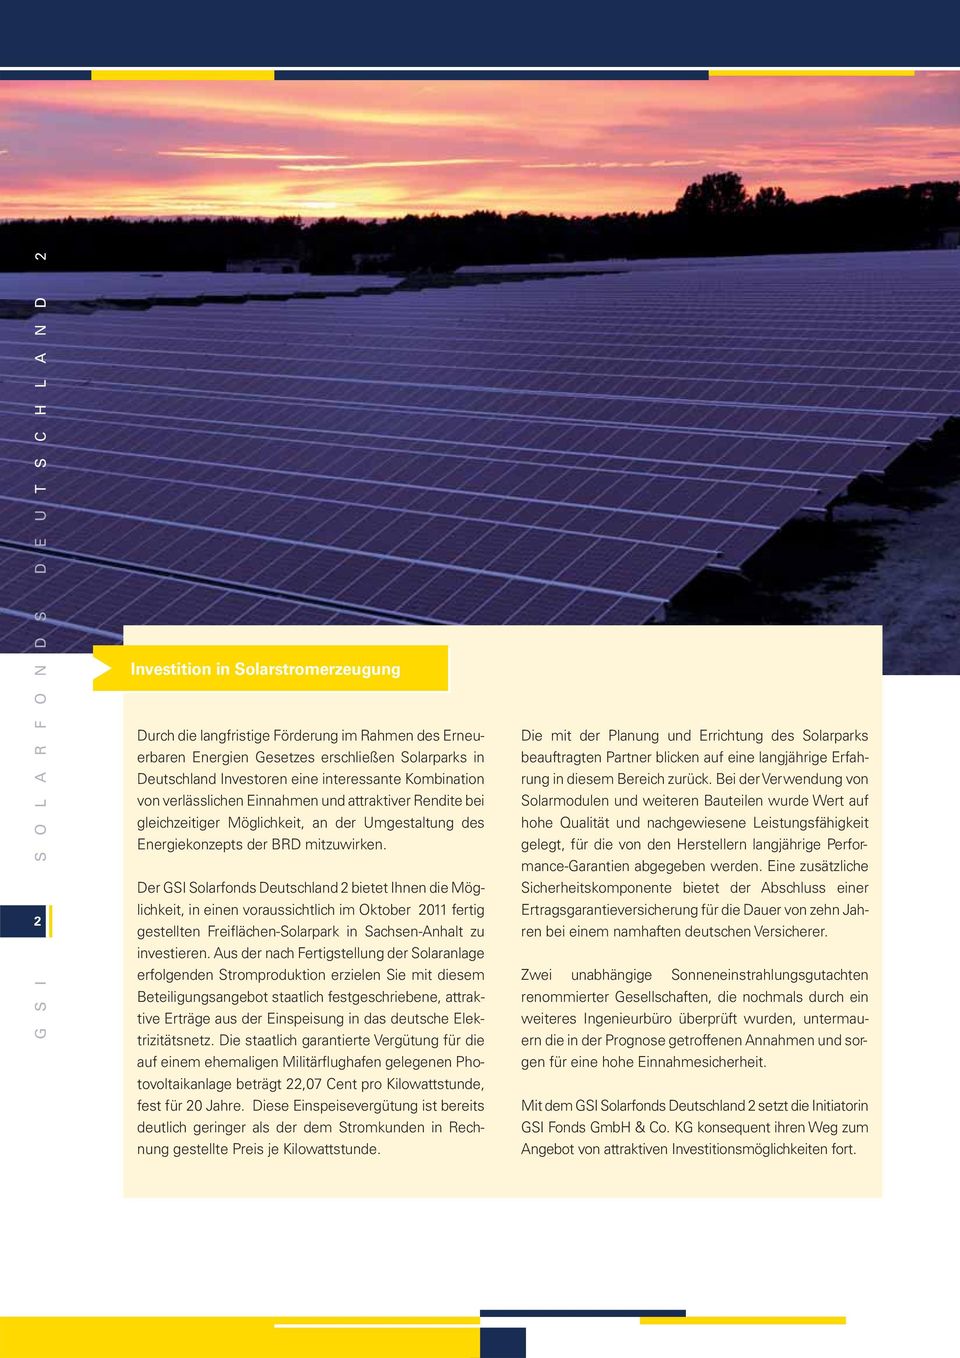 Der GSI Solarfonds Deutschland 2 bietet Ihnen die Möglichkeit, in einen voraussichtlich im Oktober 2011 fertig gestellten Freiflächen-Solarpark in Sachsen-Anhalt zu investieren.